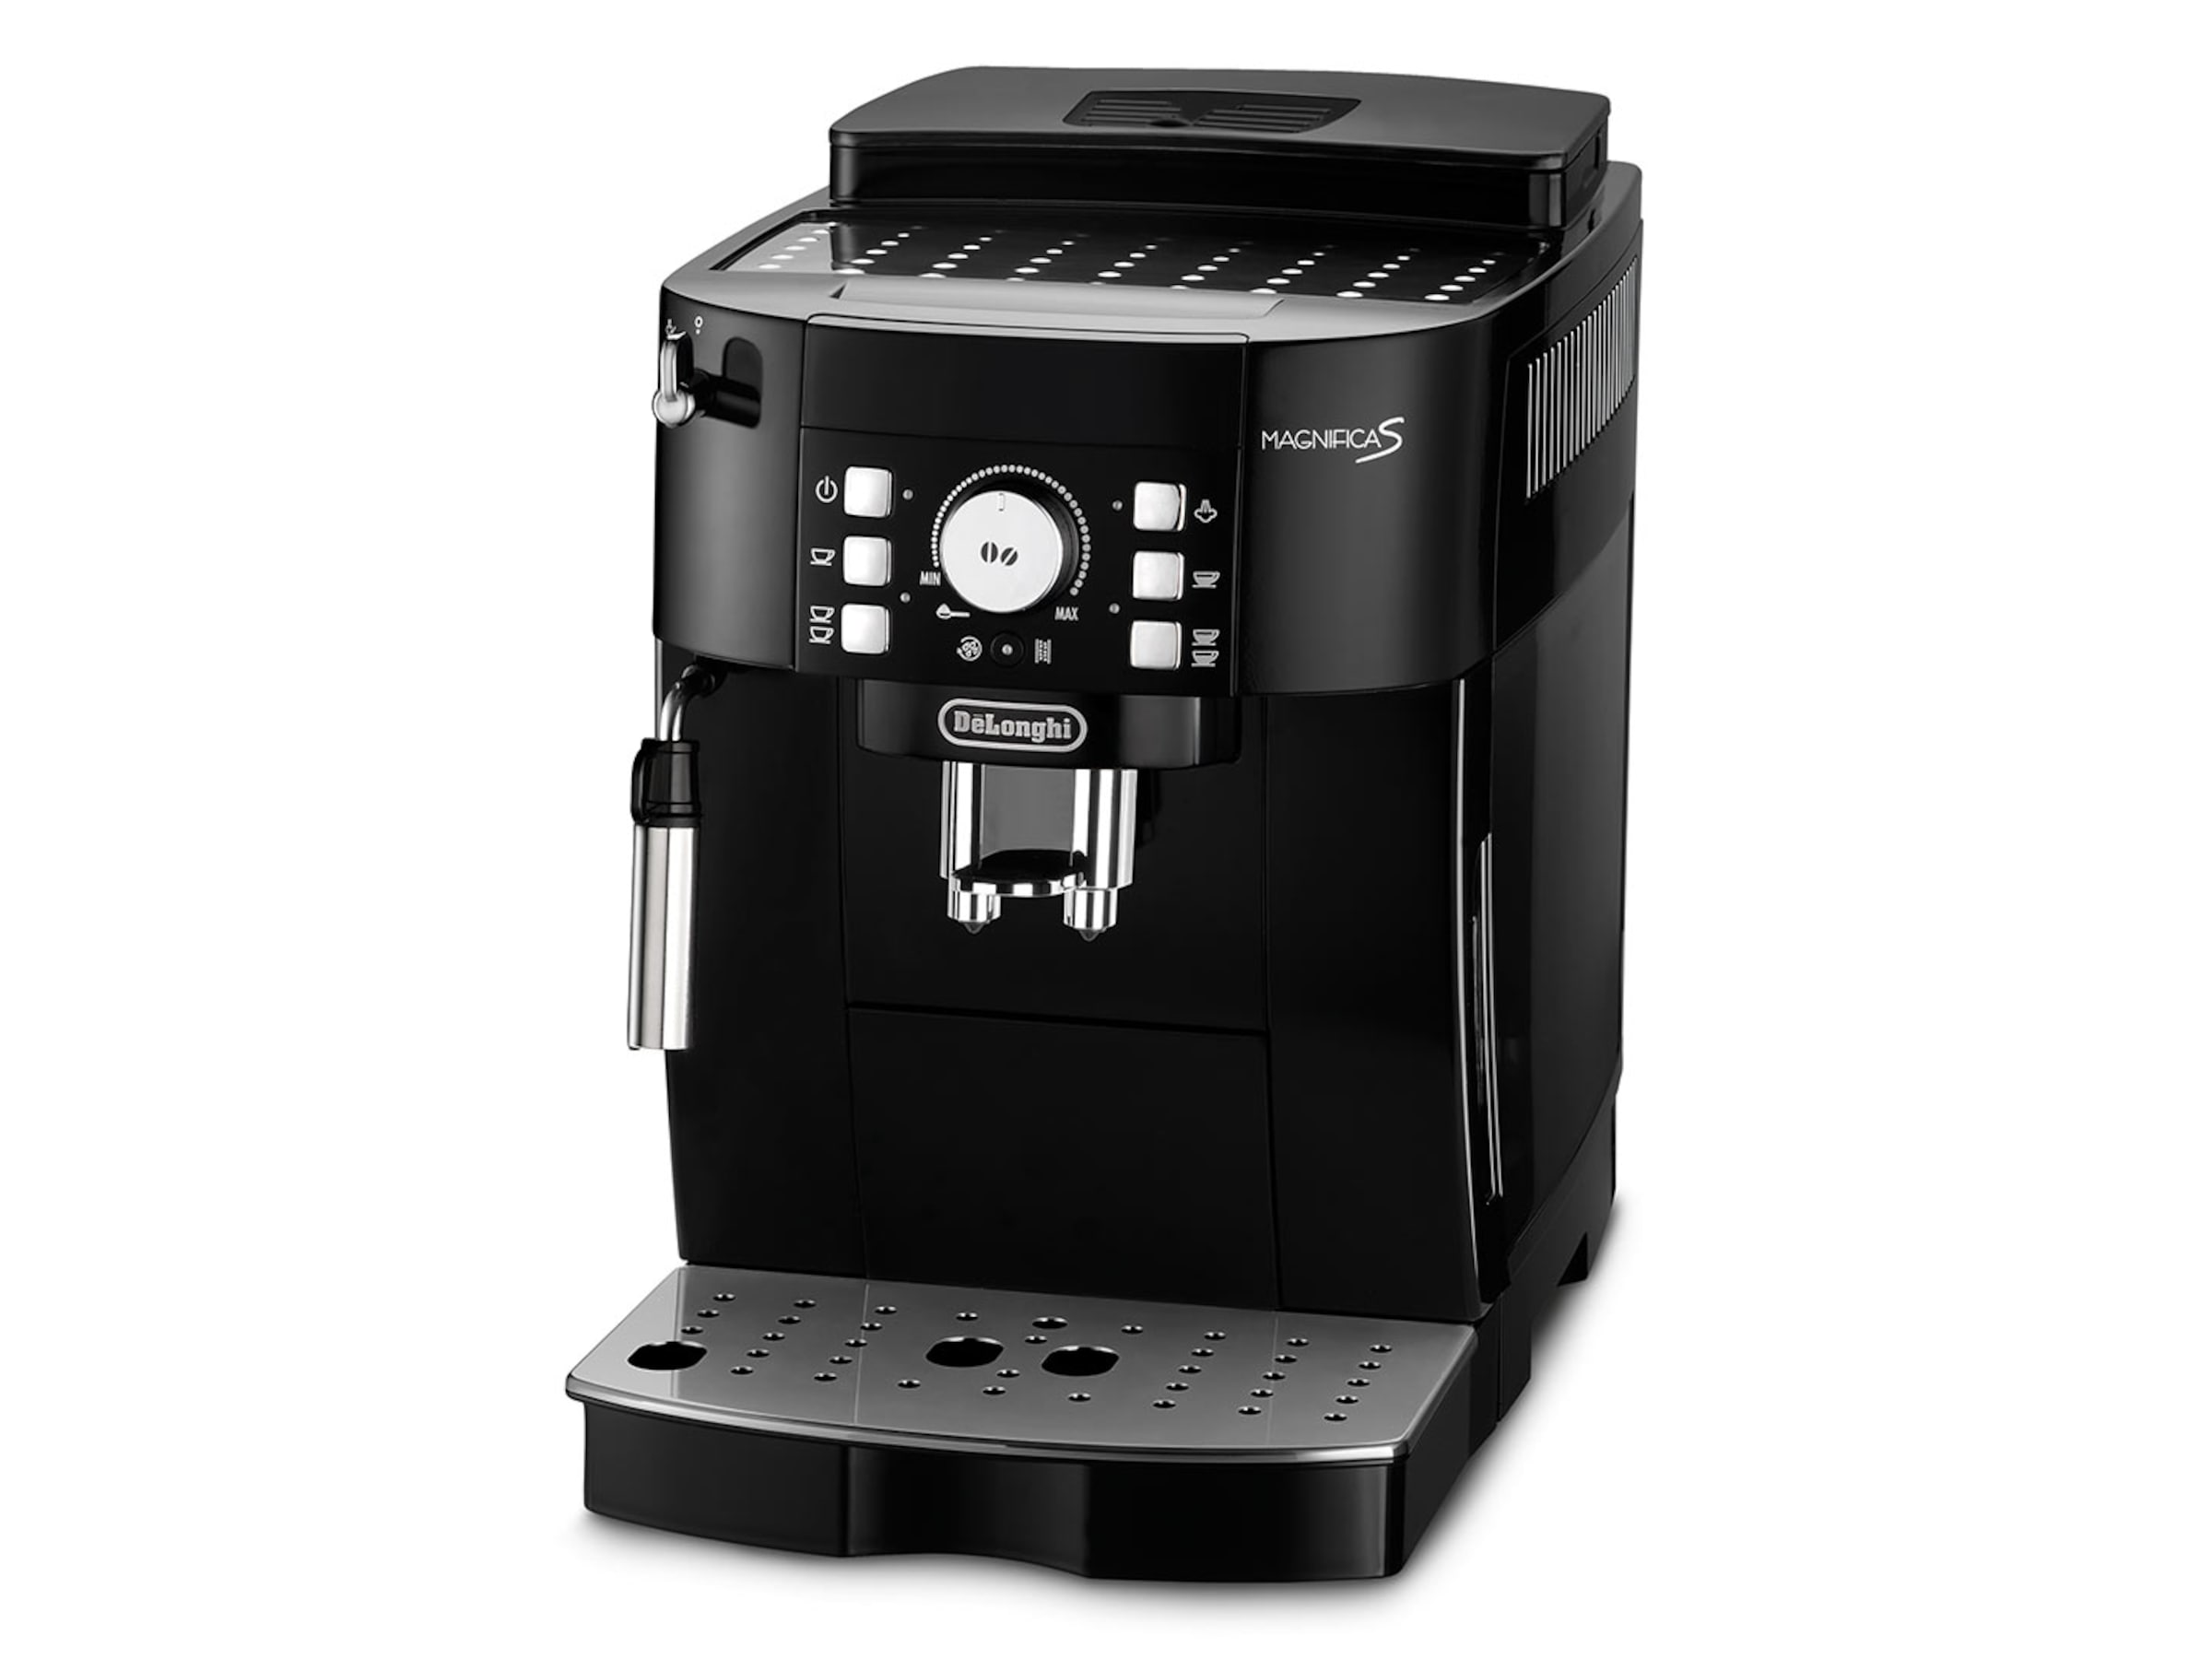 DeLonghi - Espresso - Magnifica S - Ecam 21.117.B